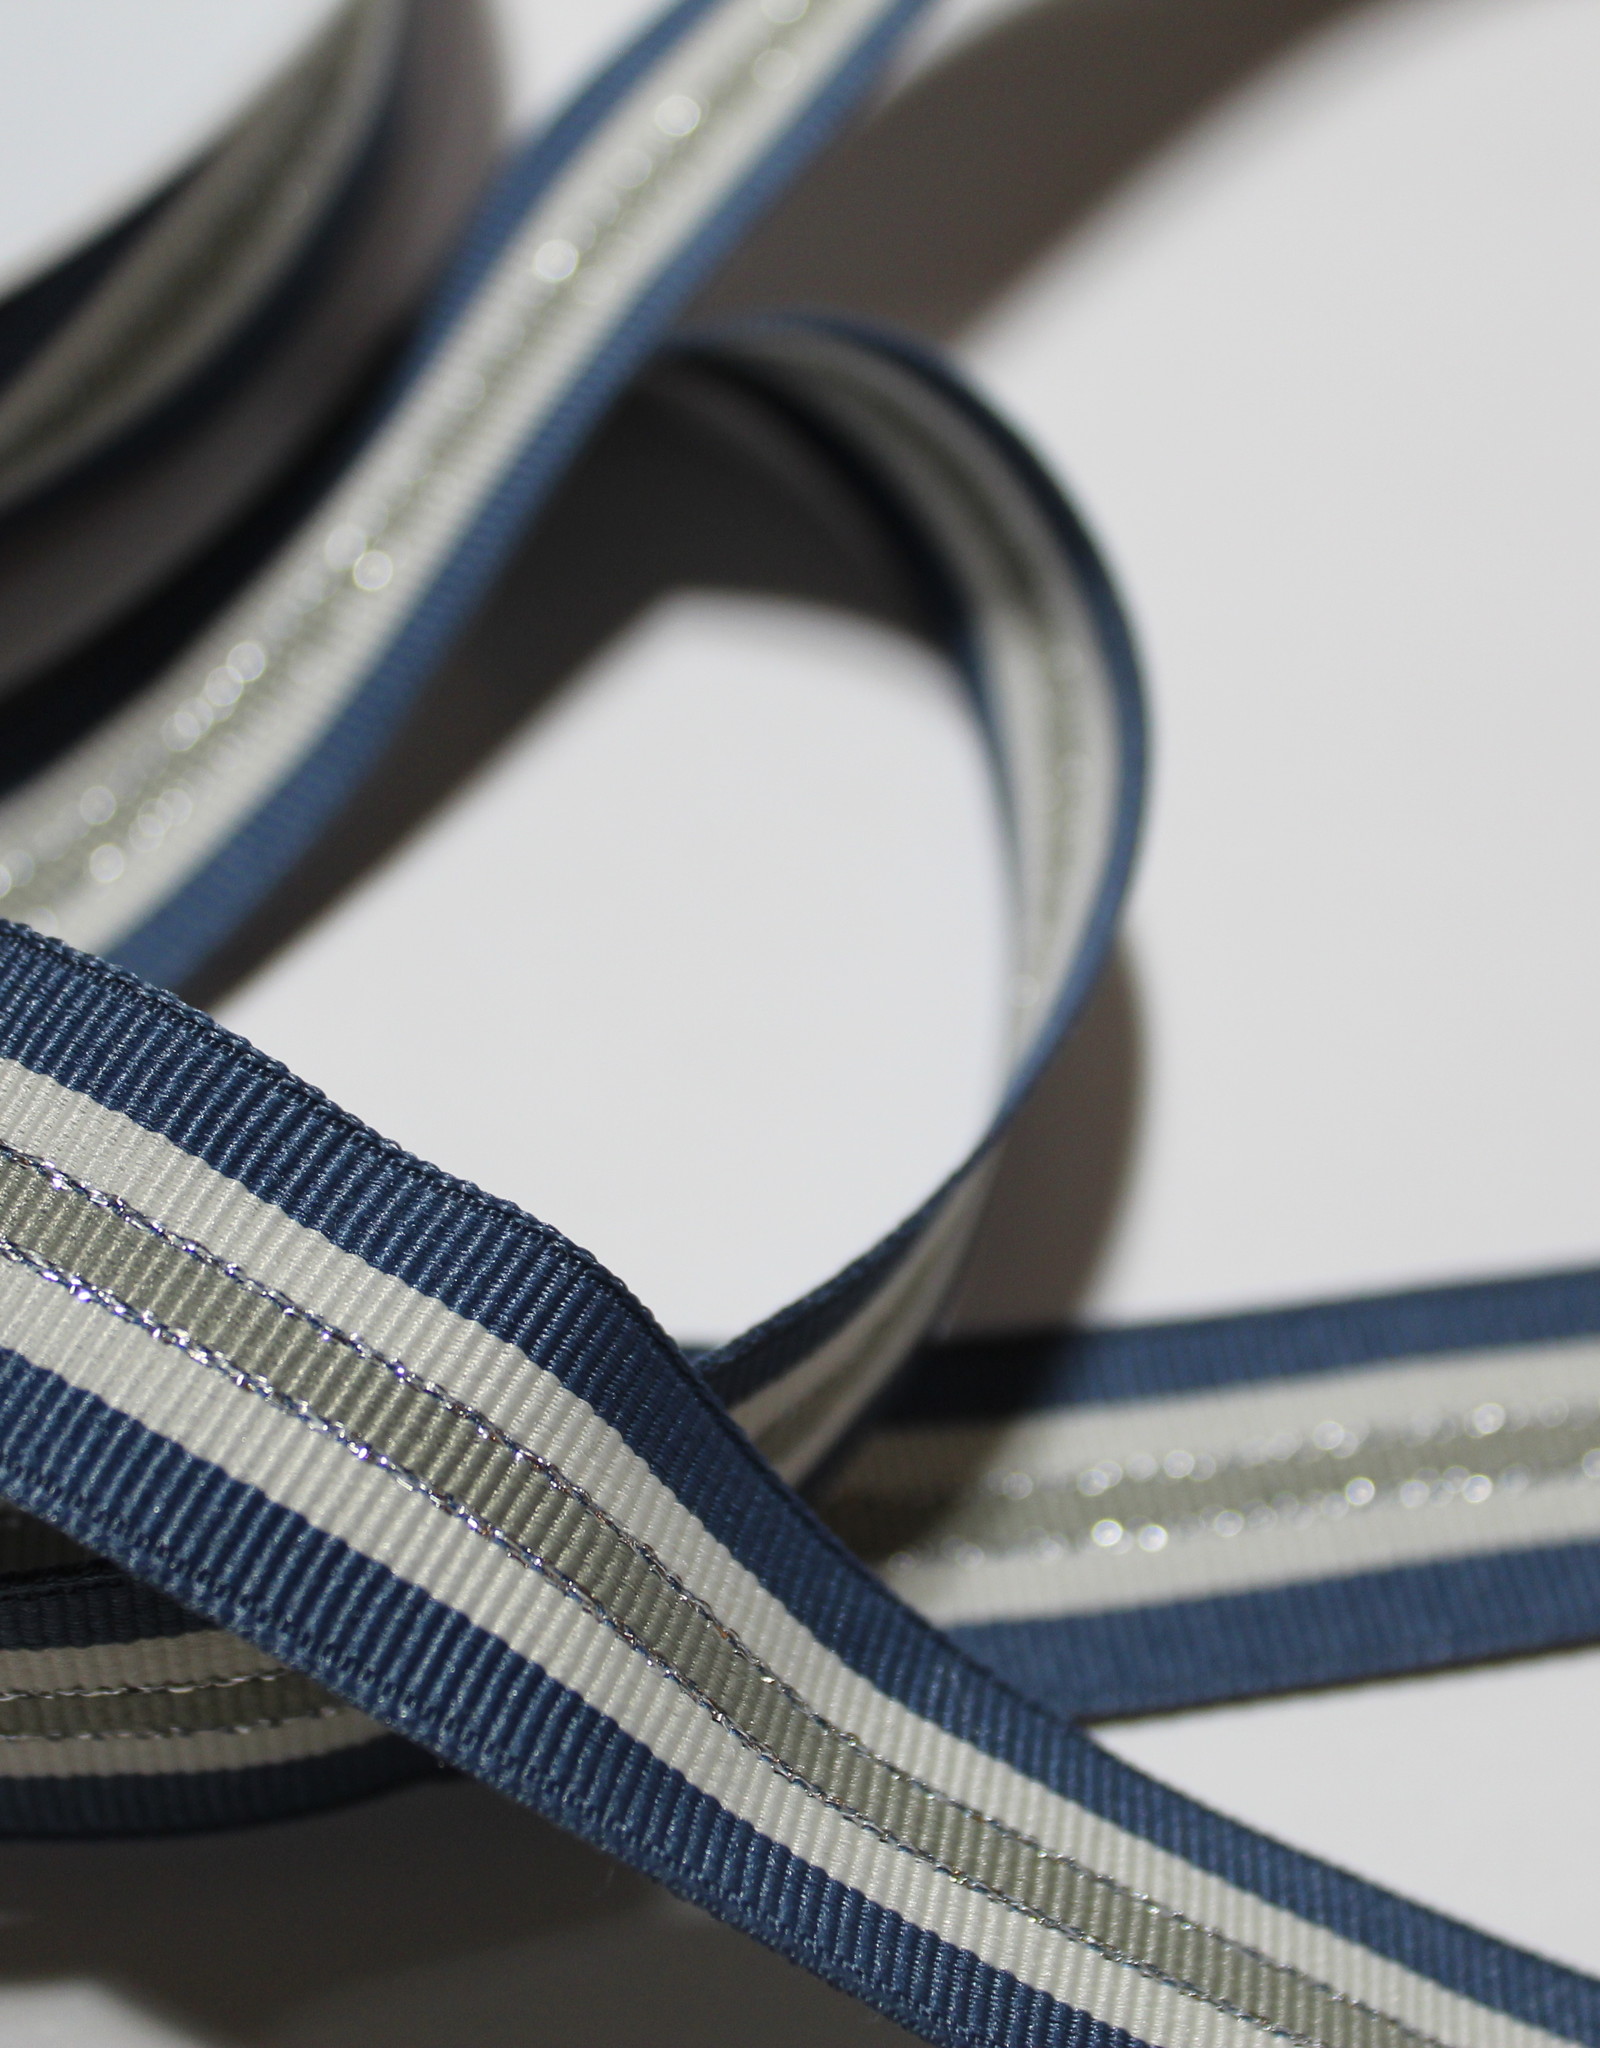 Ripslint tricolore 22mm jeansblauw/offwhite/lichtkaki met zilveren lurex lijn